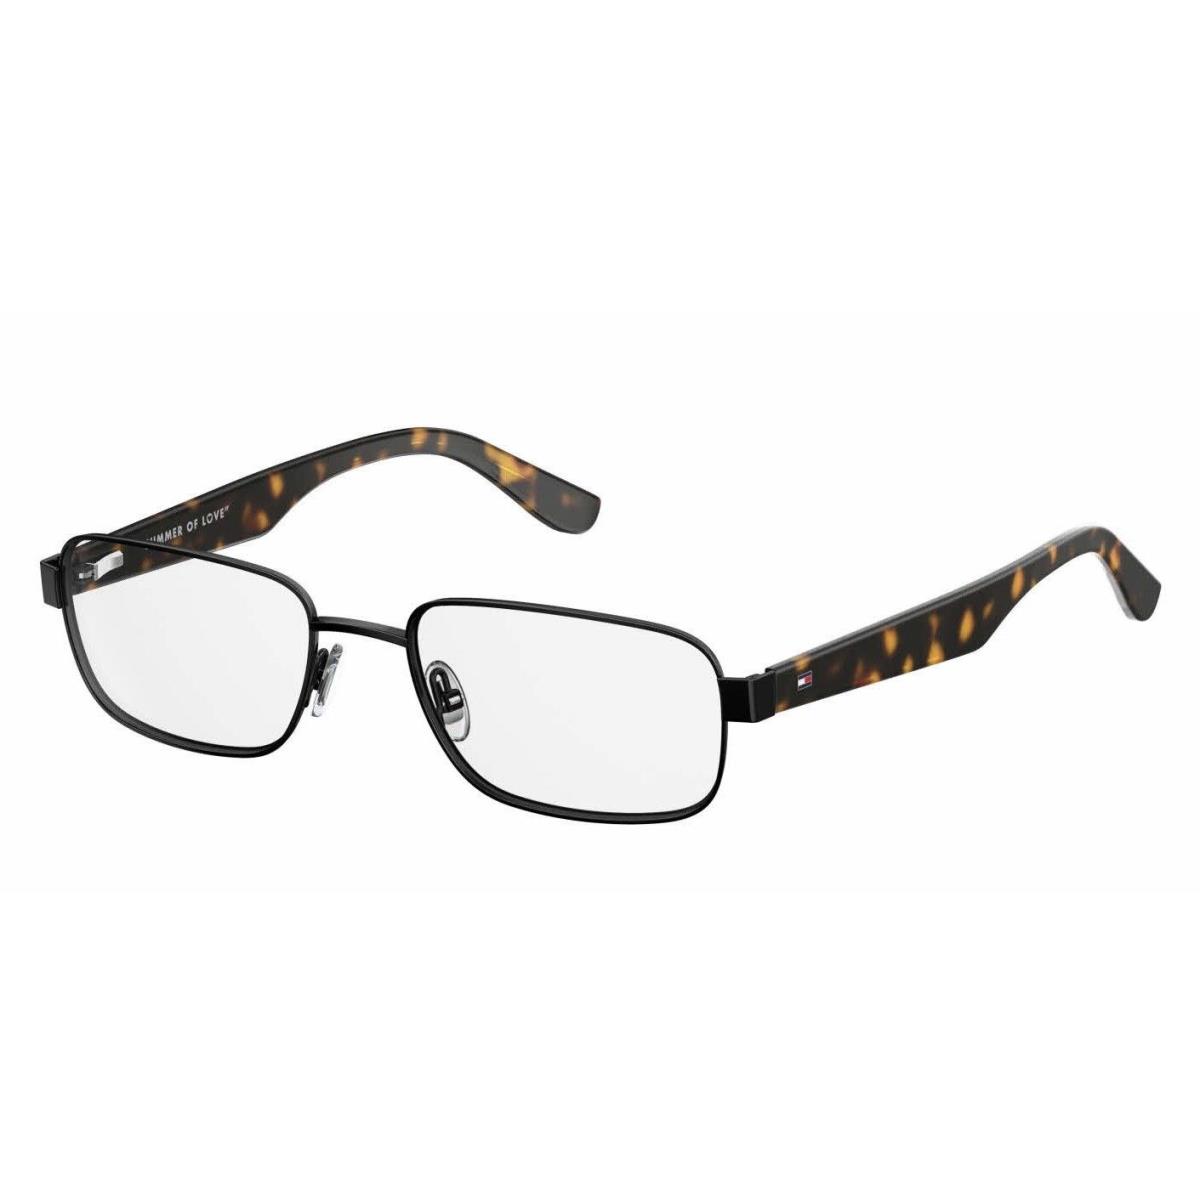 Tommy Hilfiger Eyeglasses 1489 807 53 or 55mm Black Tortoise Ophthalmic RX Frame